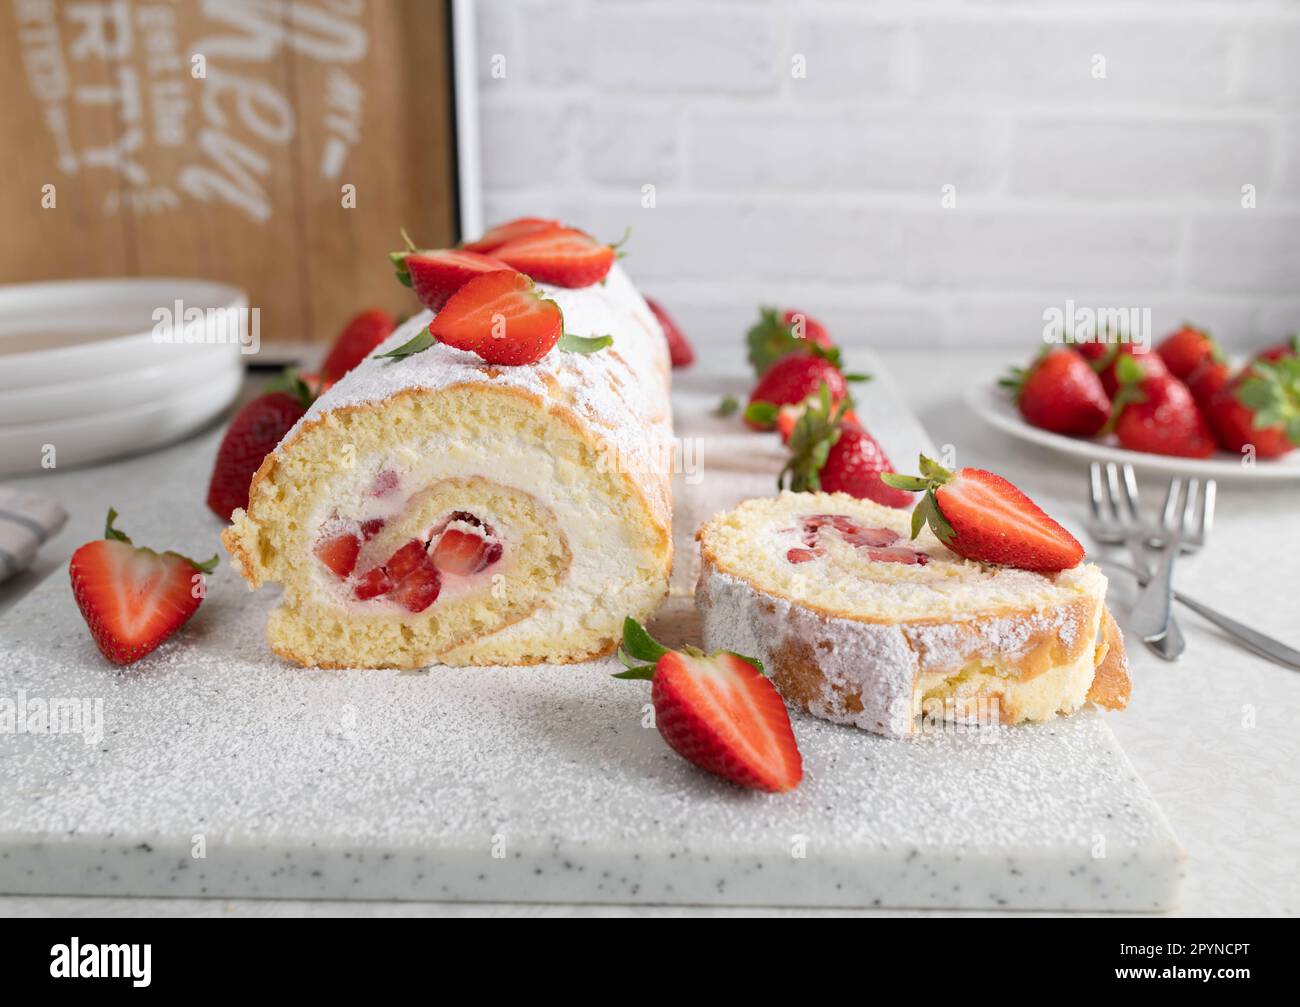 Rotolo svizzero con panna montata e ripieno di fragole su sfondo chiaro della cucina Foto Stock